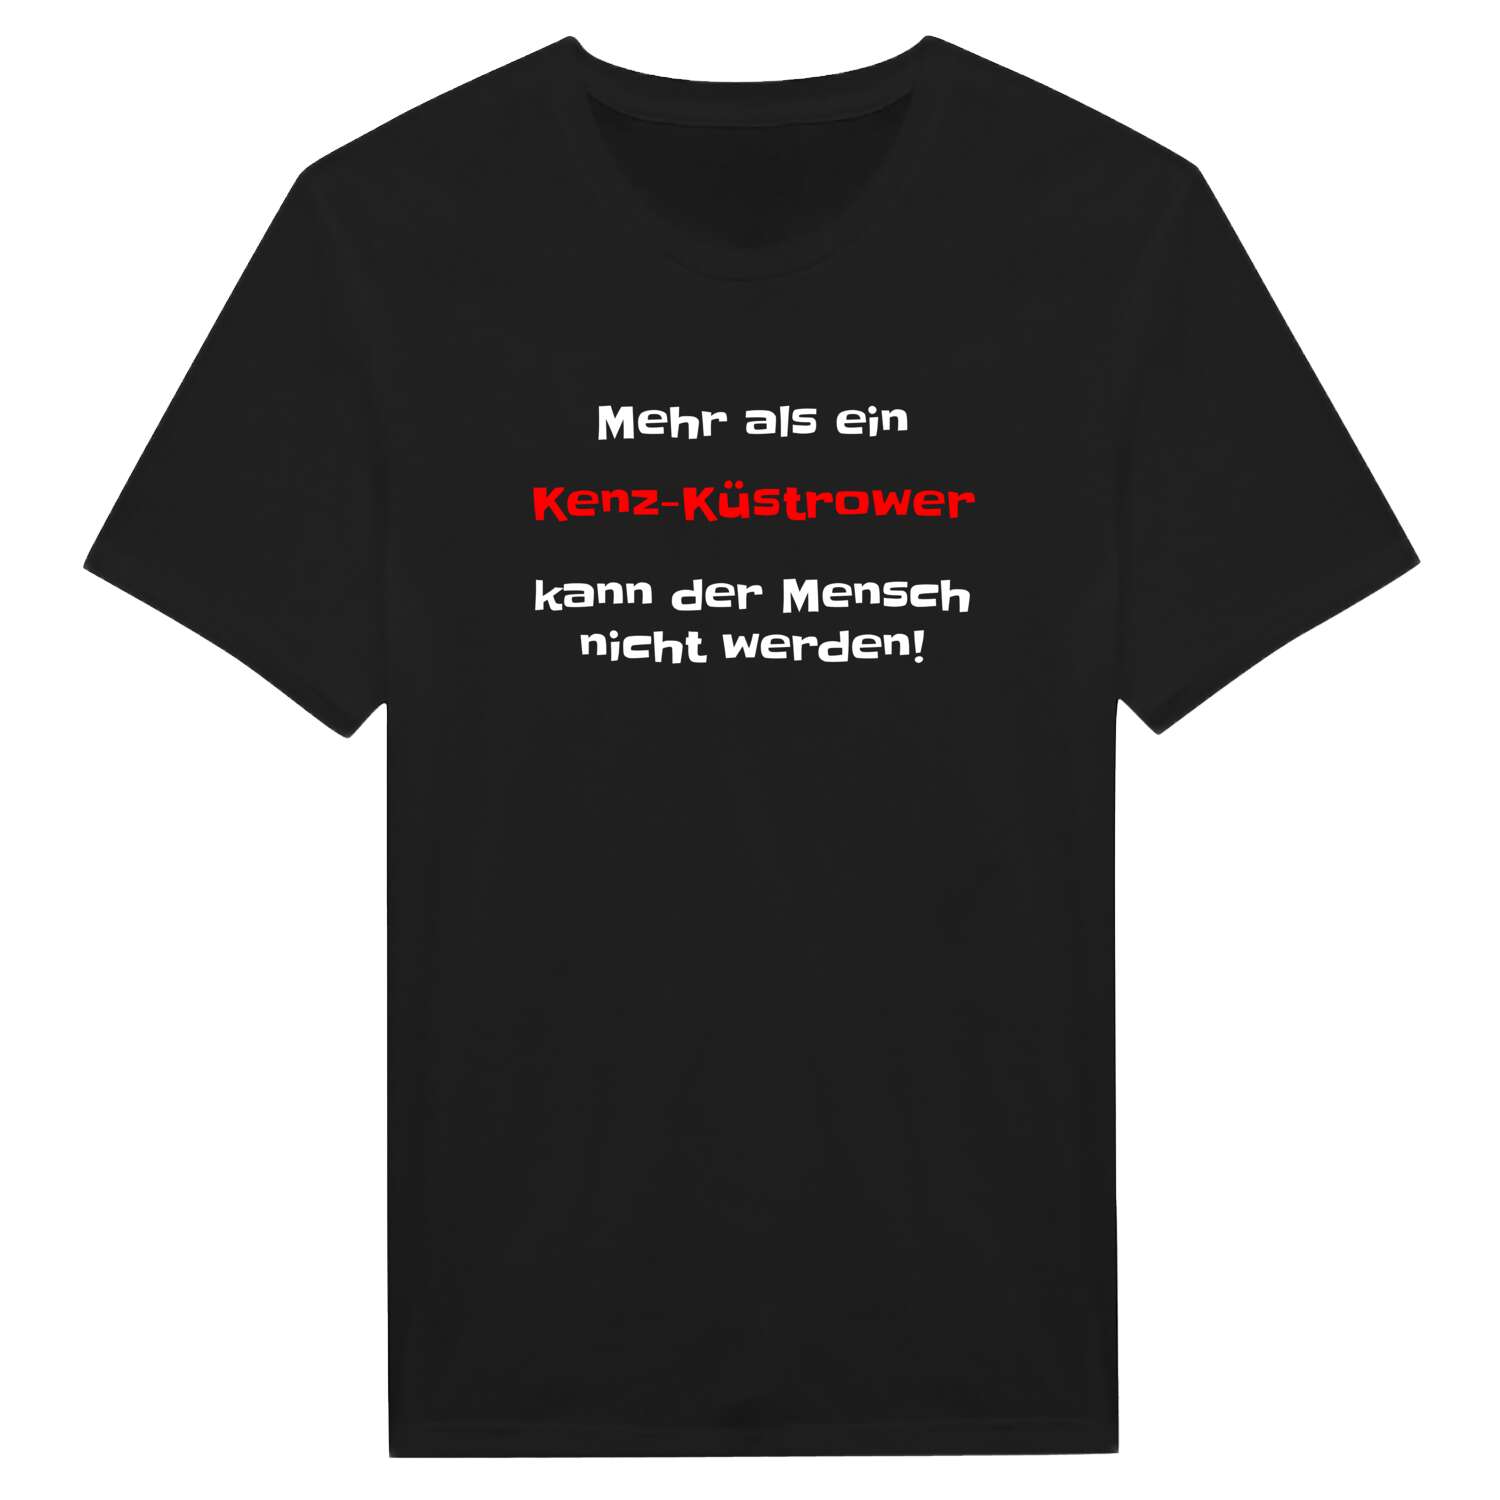 Kenz-Küstrow T-Shirt »Mehr als ein«